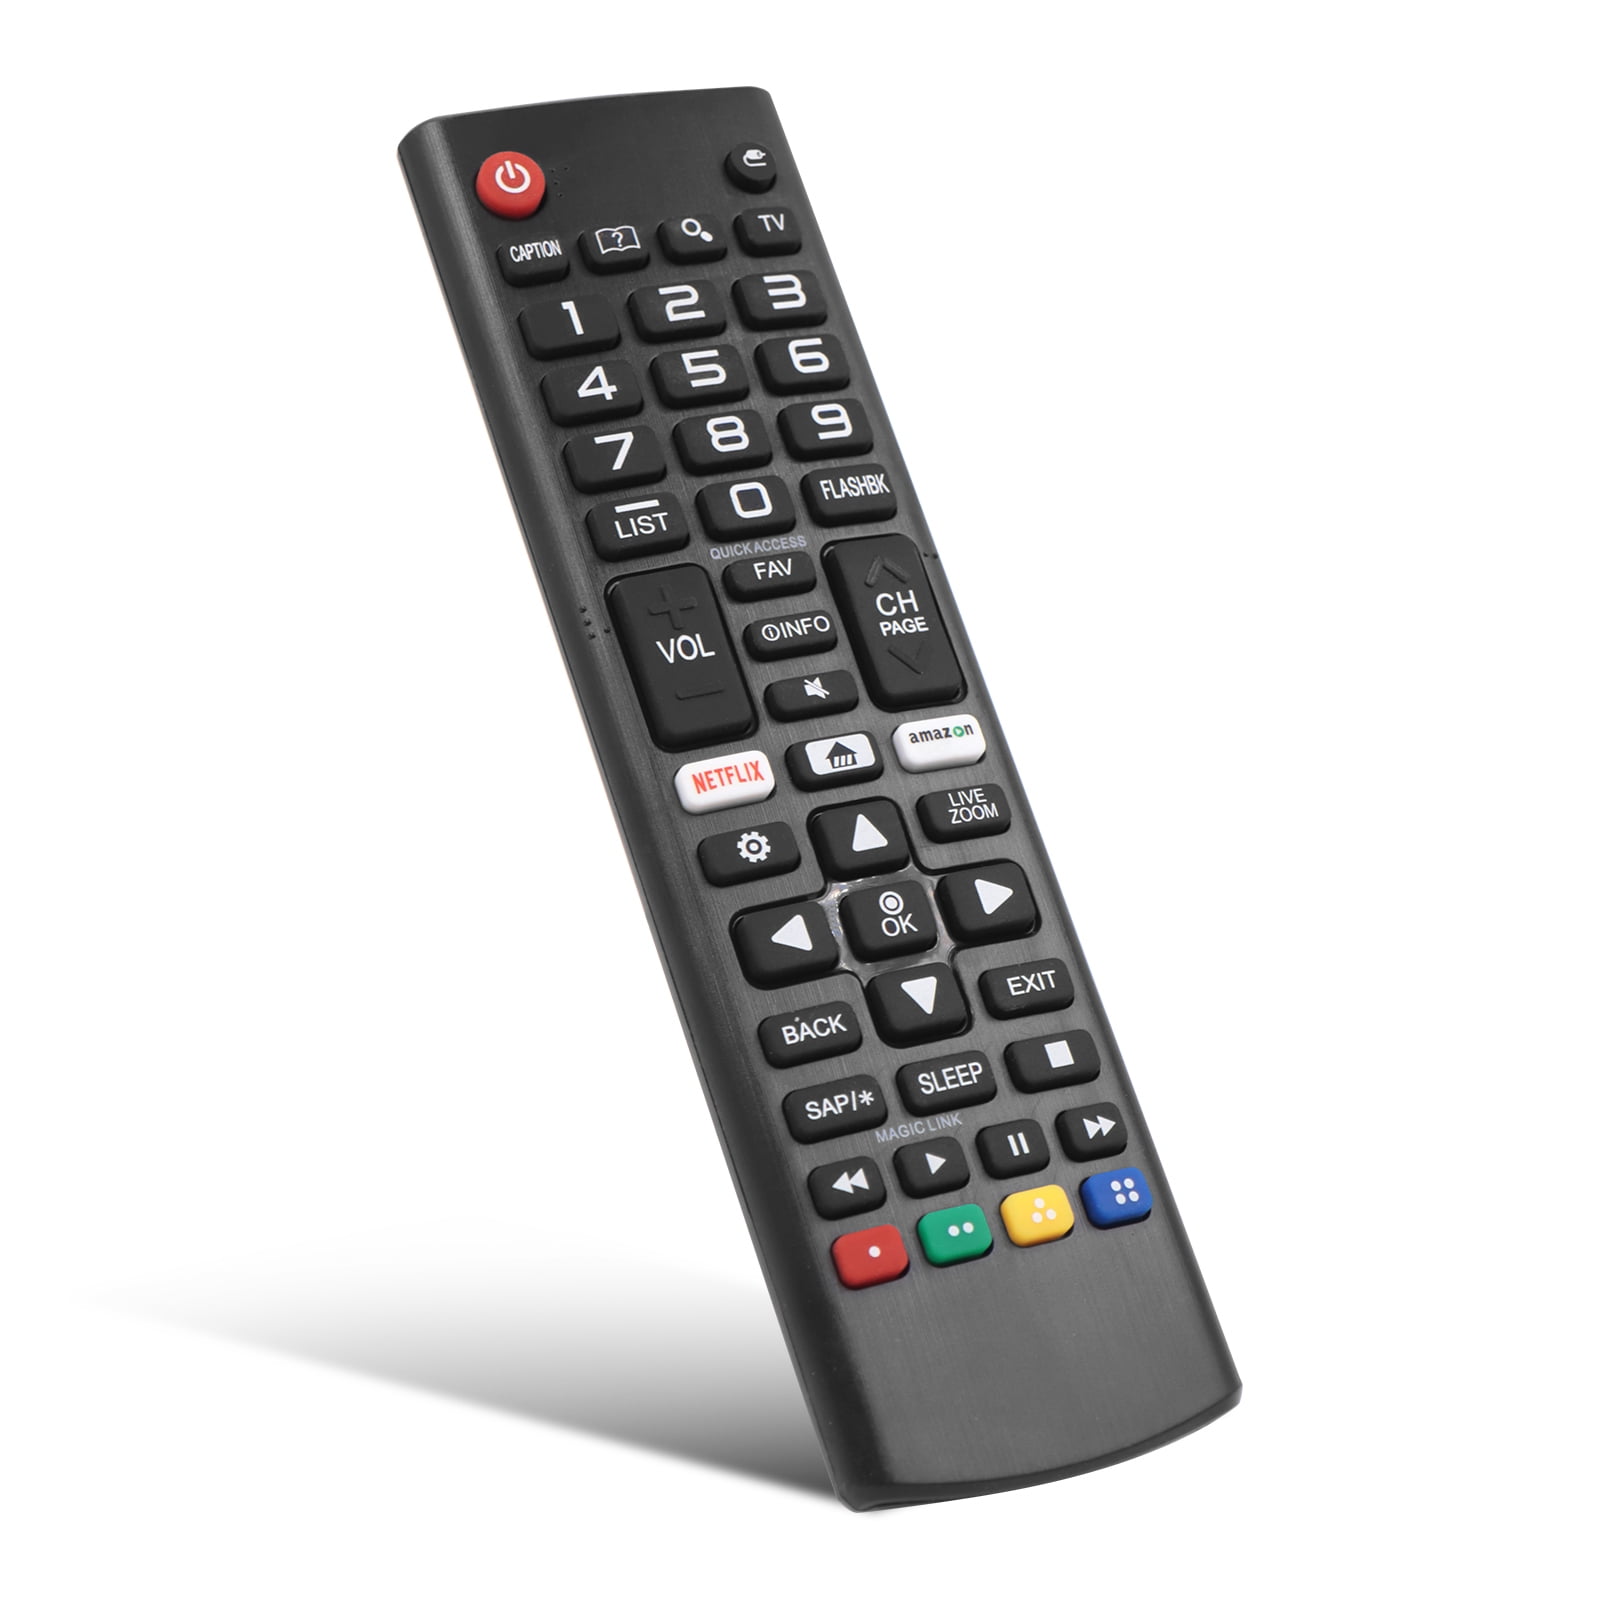 Original LG TV Remote Control for 43uk6300pue AKB75375604 for sale online